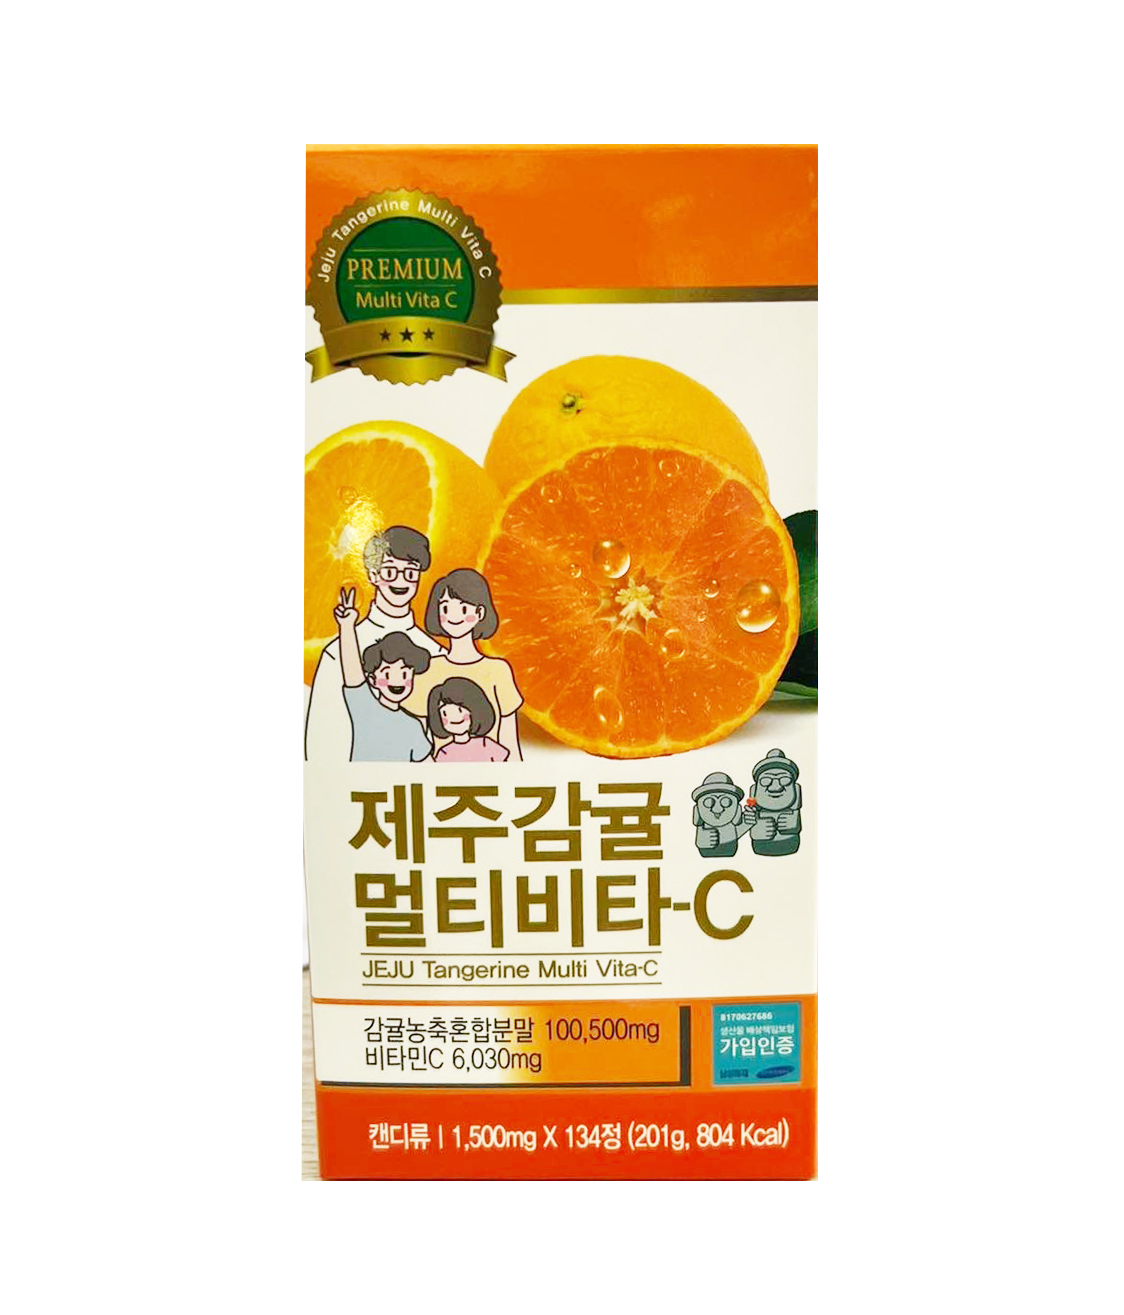 Nguồn gốc và quy trình sản xuất của vitamin C Jeju?
